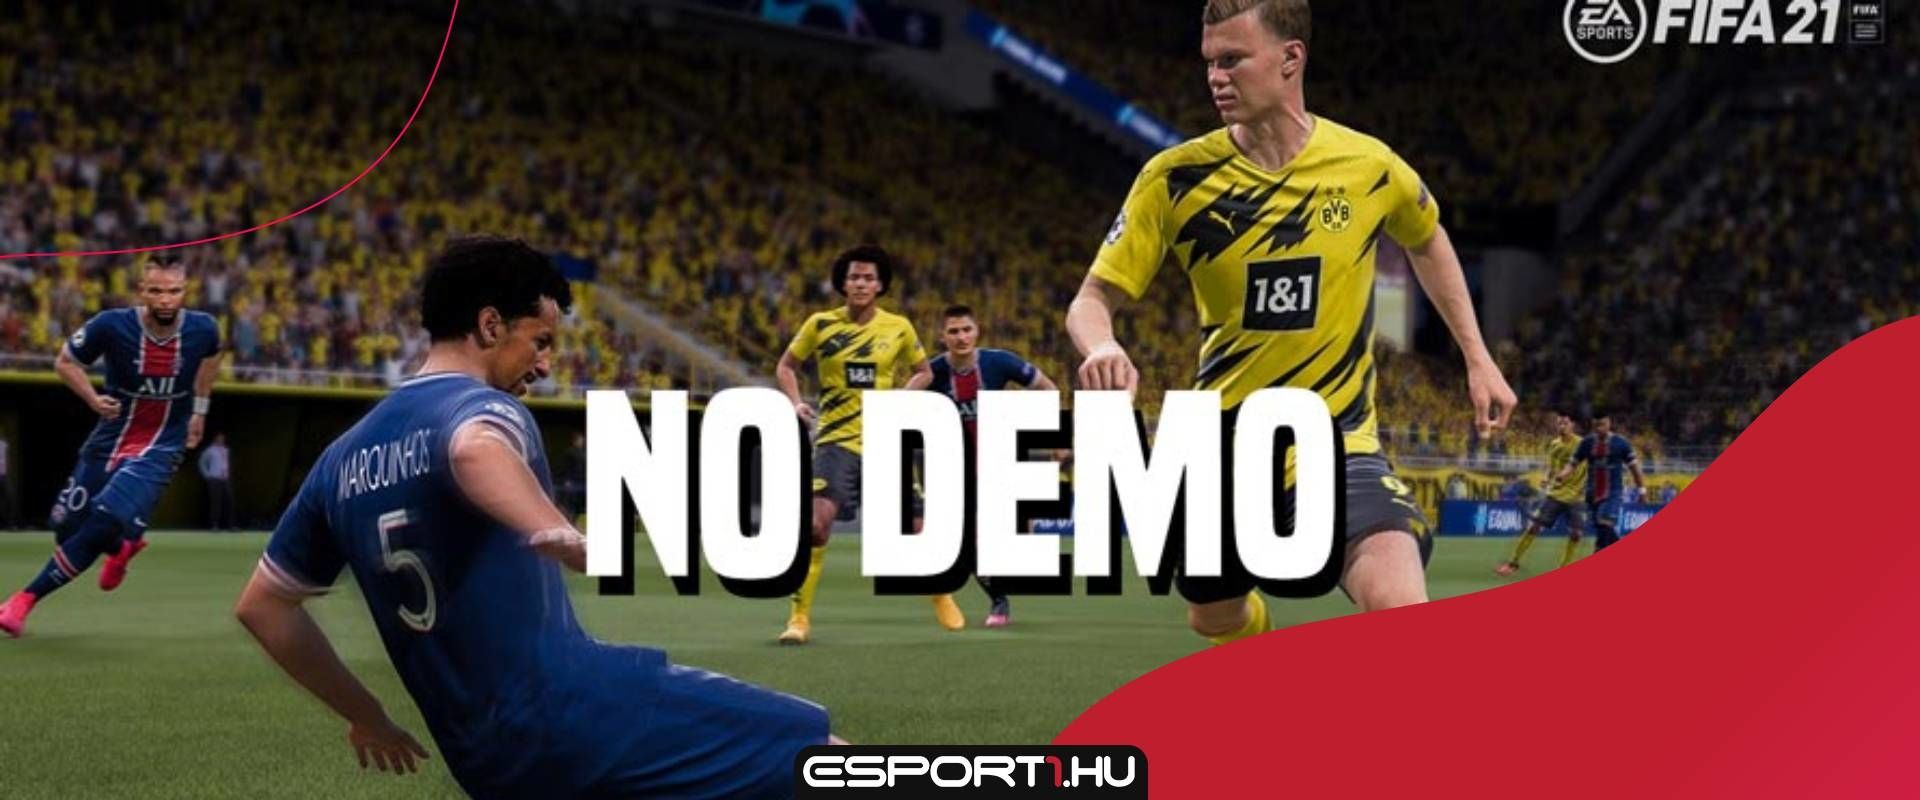 Az EA Sports elmondta miért nem lesz most FIFA21 demó